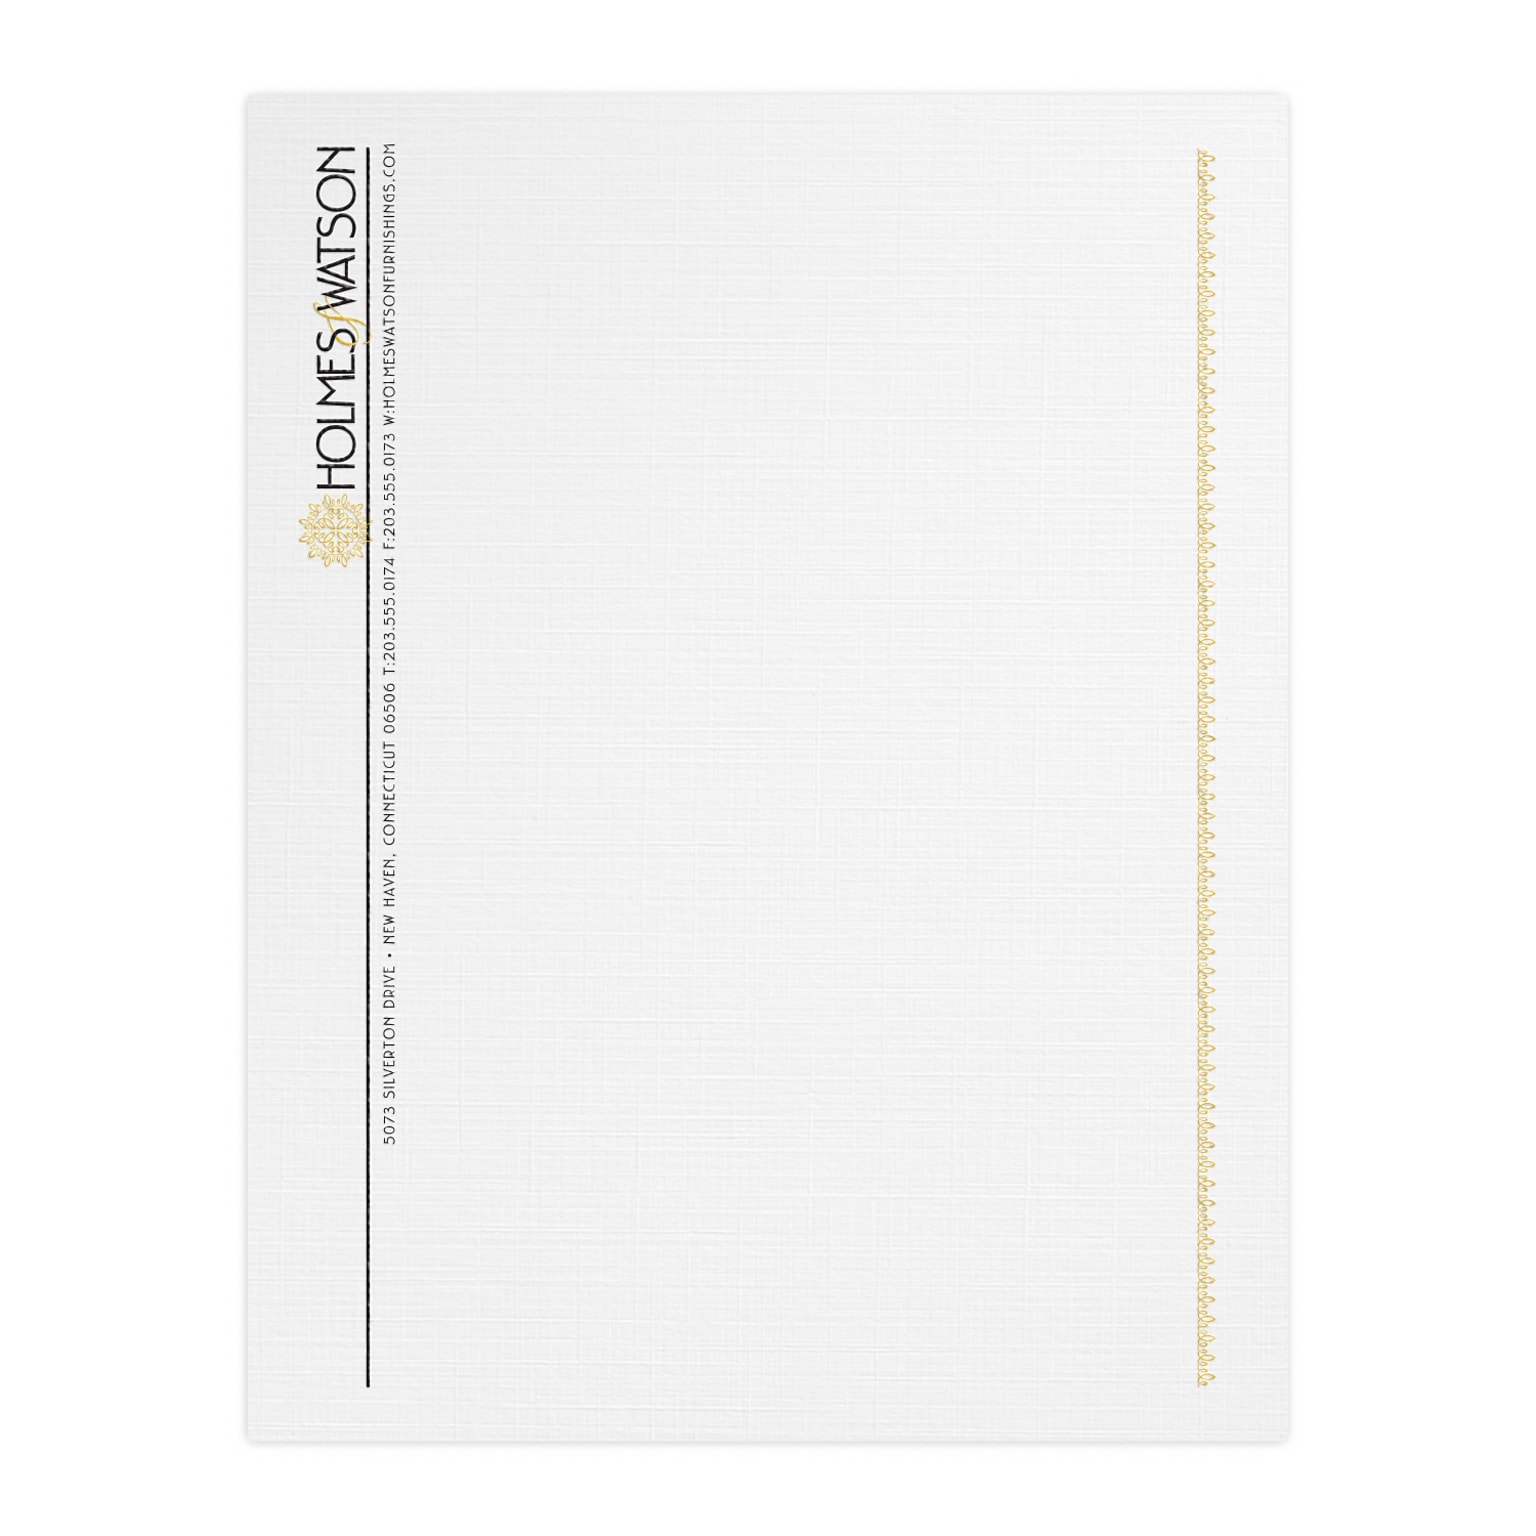 Custom 1 & 2 Color Letterhead, 8.5 x 11, CLASSIC® Linen Solar White 24# Stock, 1 Standard and 1 Custom Inks, Raised Print